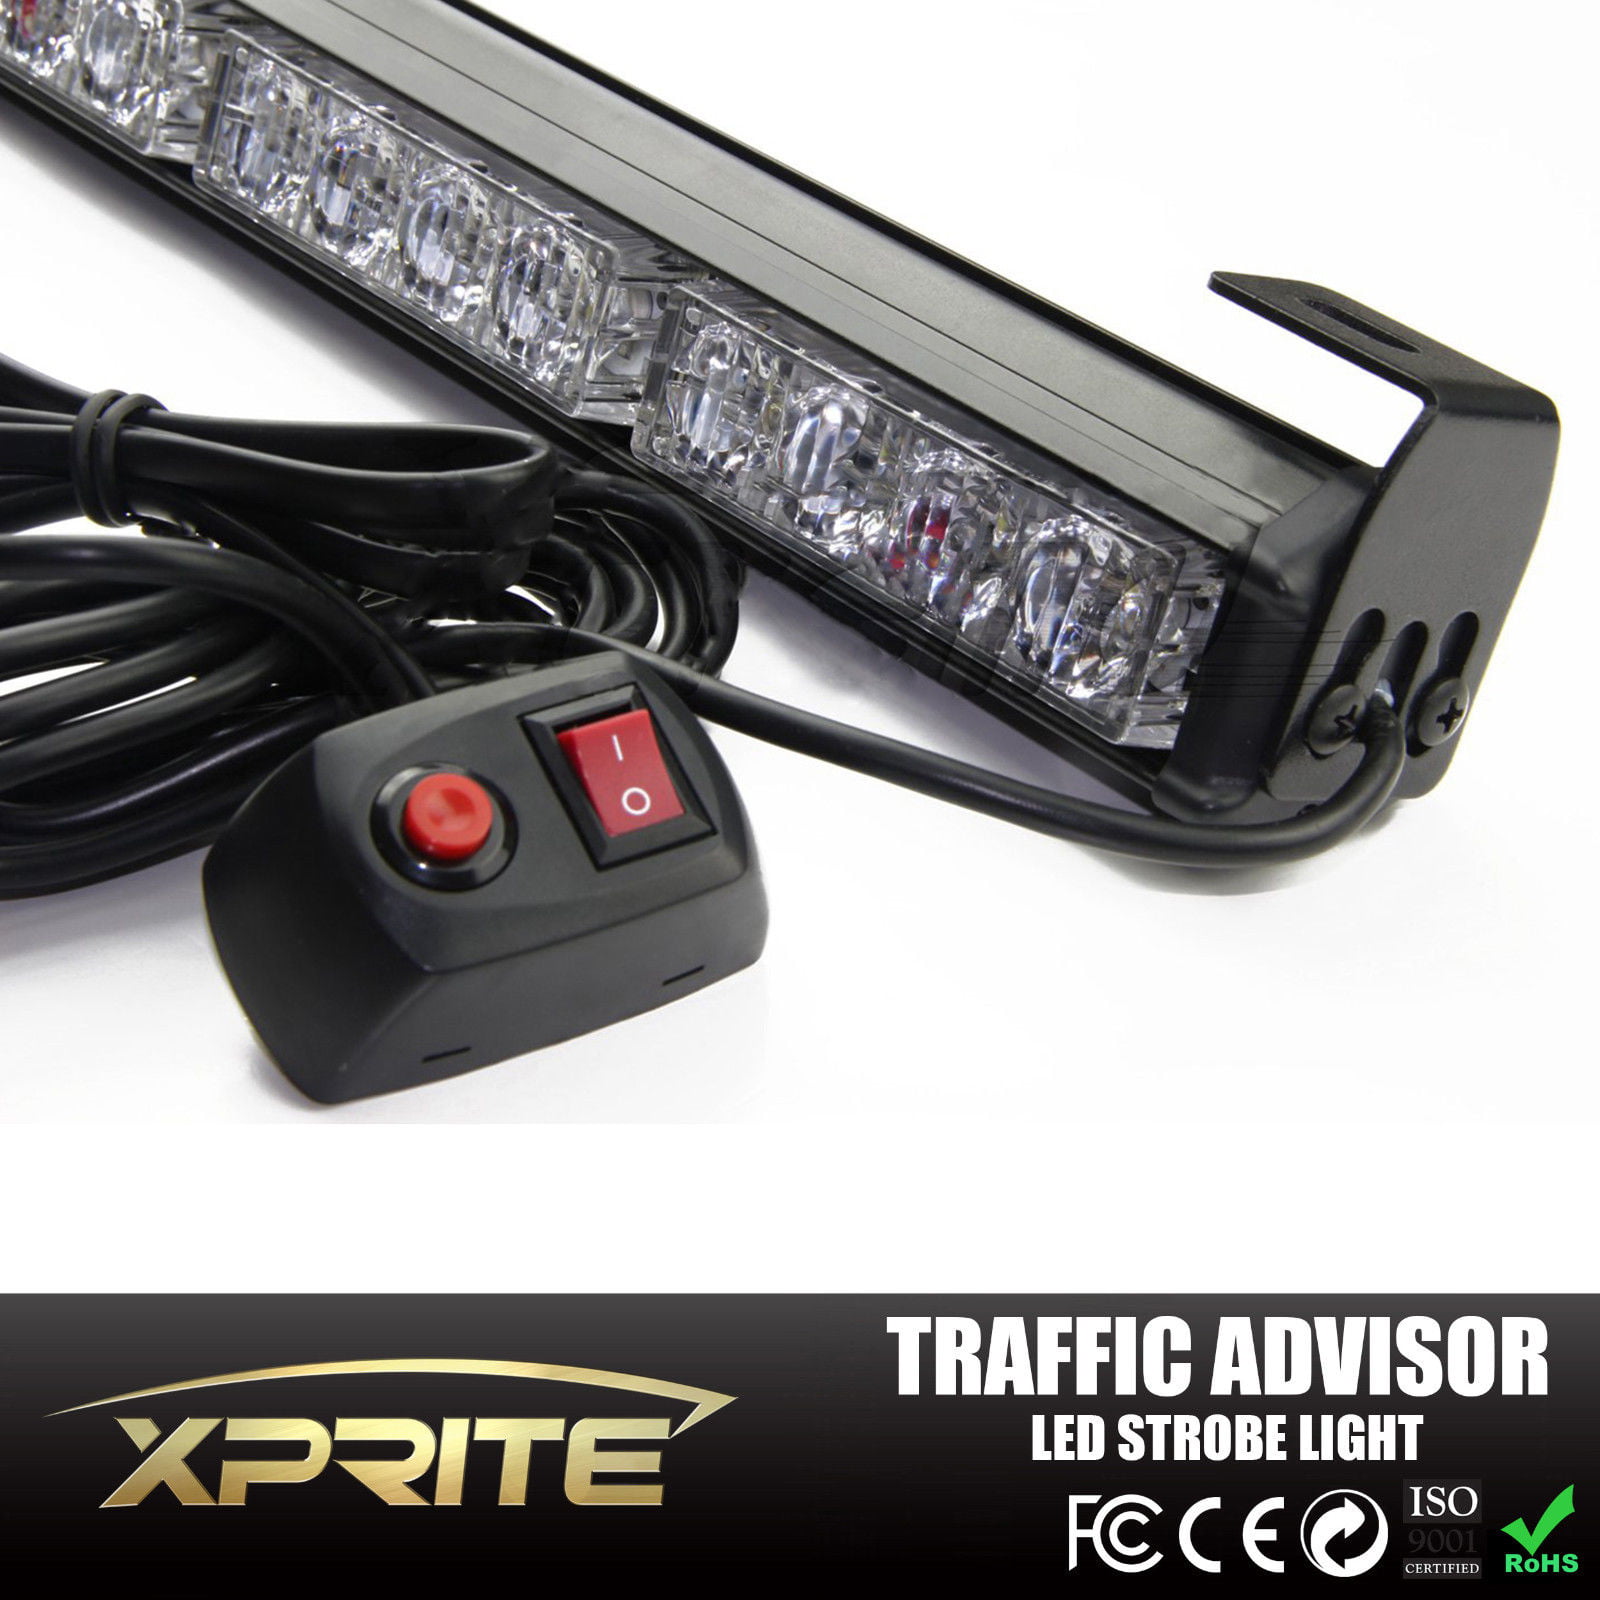 White & Amber Advising Emergency Warning Strobe Light Bar Xprite 35.5 LED Traffic Adviser 